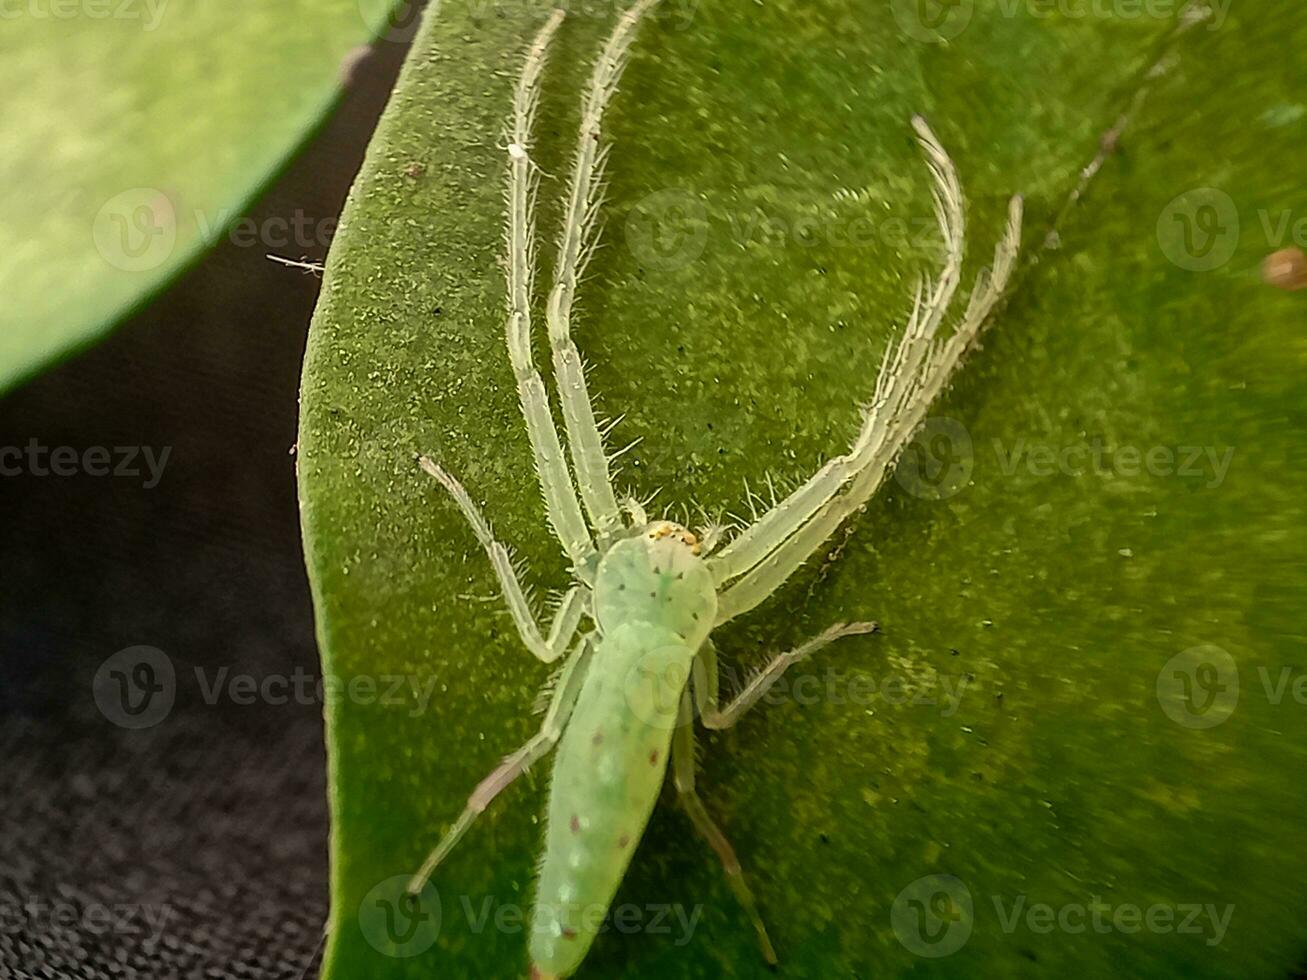 Lyssomanen Viridis, häufig bekannt wie das Magnolie Grün Jumper, ist ein Spezies von Springen Spinne von das Gattung Lyssomanen foto